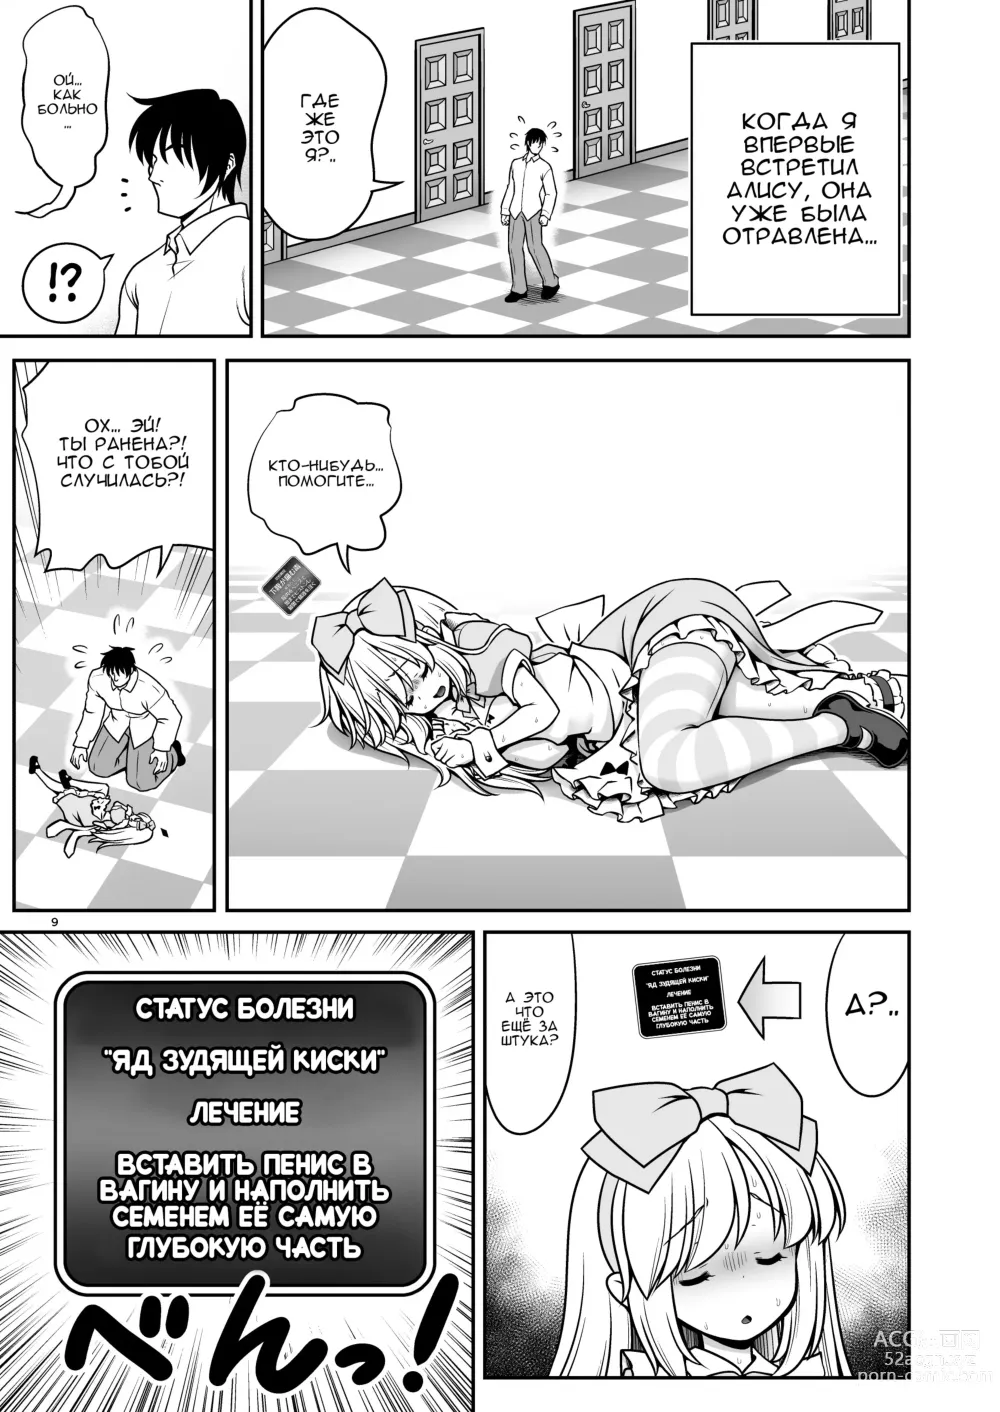 Page 9 of doujinshi Безнадёжная алиса, которая настолько подсела на сексуальное лечение, что без разбора ела все ядовитые пироженки